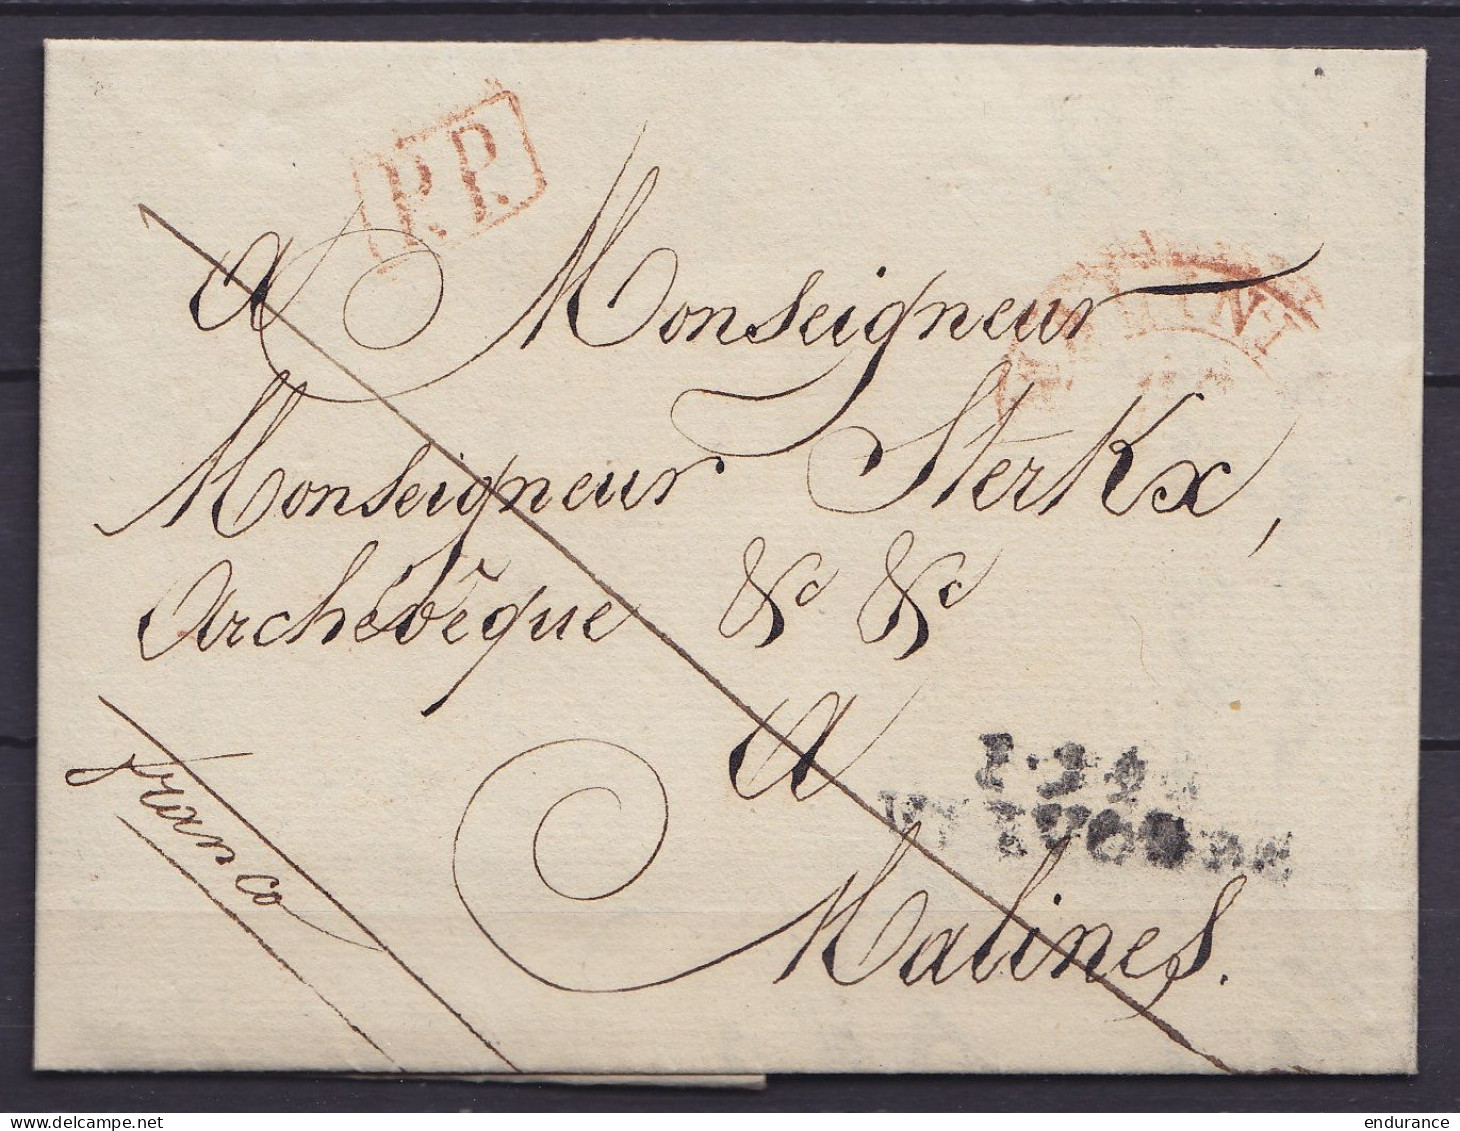 L. Datée 26 Avril 1834 De GRIMBERGEN Franchise Pour Archevêque De MALINES - Griffes "P 94 P/ VILVORDE" & [P.P.] - Man "f - 1830-1849 (Belgica Independiente)